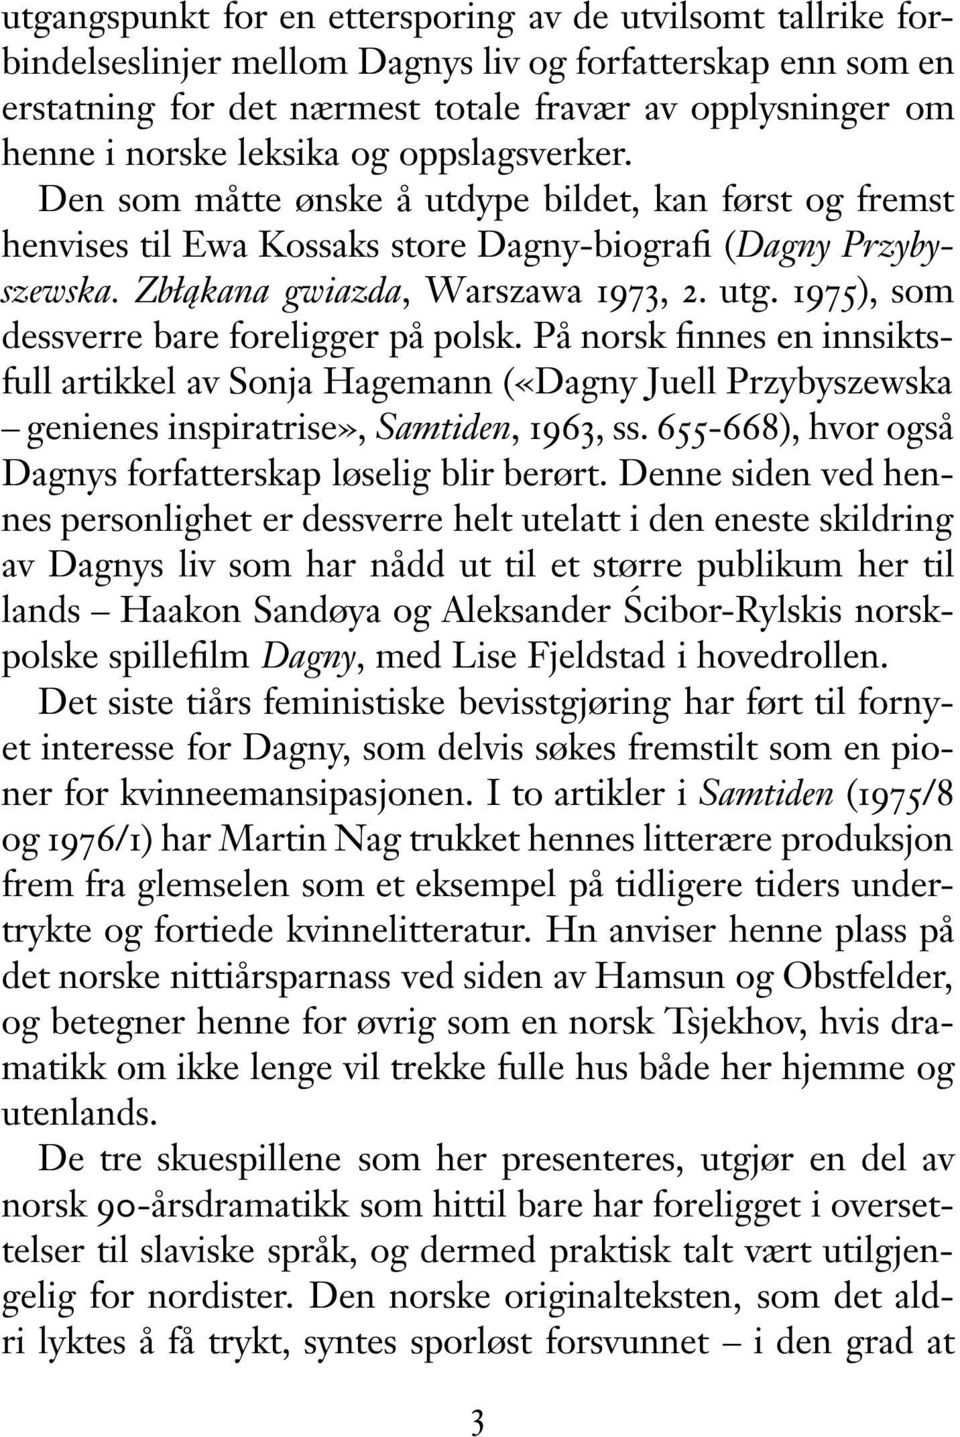 1975), som dessverre bare foreligger på polsk. På norsk finnes en innsiktsfull artikkel av Sonja Hagemann («Dagny Juell Przybyszewska genienes inspiratrise», Samtiden, 1963, ss.